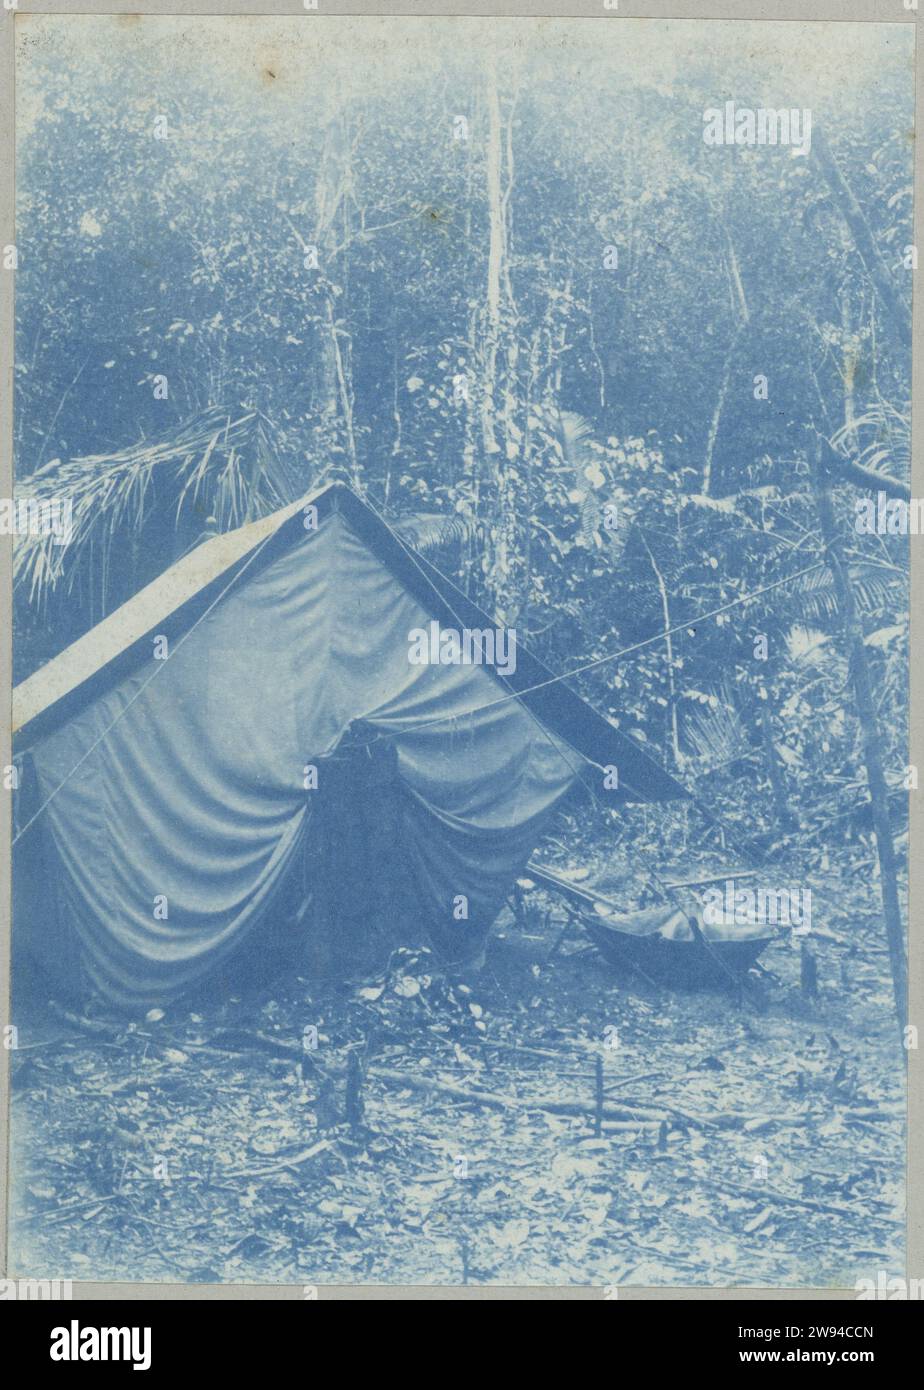 Meetkamp traf Muskietentent aan de Saramaaccakreek, 1903–1910 fotografieren Sie Ein Zelt mit einem Moskitonetz im Meetkamp im Dschungel am Fluss kleine Saramacca (Region Saramacca). Teil des Fotoalbums Souvenir de Voyage (Teil 1) über das Leben der Familie Doijer in und um die MA Retreat Plantage in Suriname in den Jahren 1903–1910. Suriname fotografische Unterstützung des Zyanotyps Suriname Stockfoto